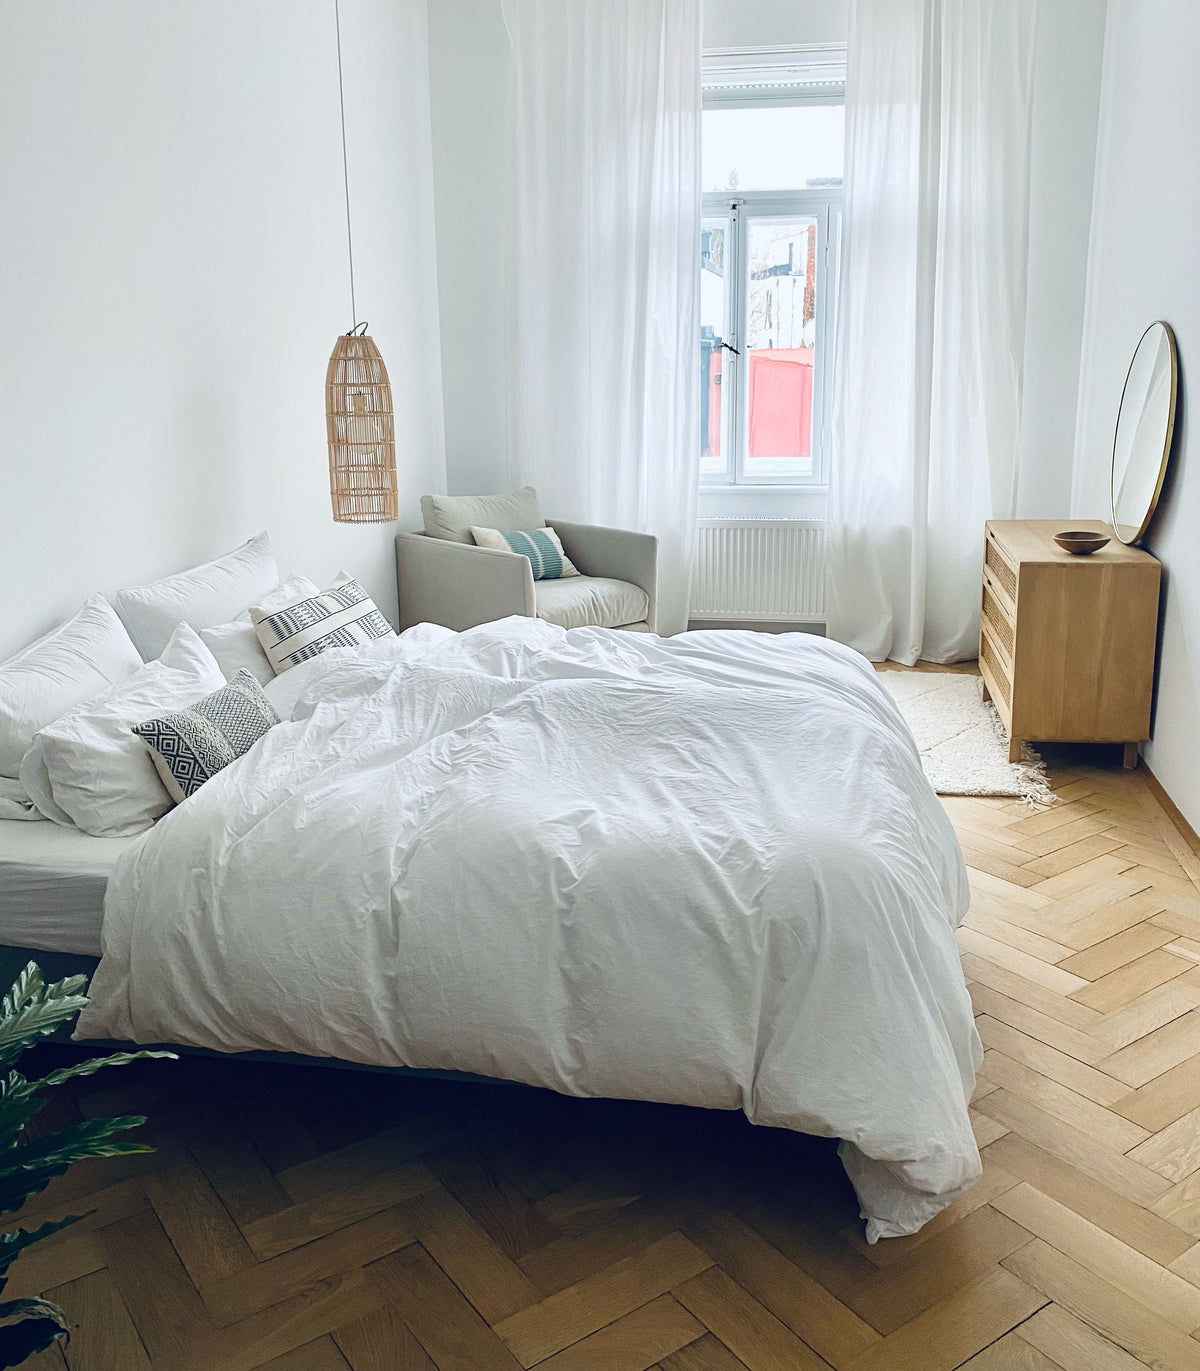 Gemütliche Schlafzimmereinrichtung im Scandiboho Style. Beni Qurain Teppich mit Rattankommode und Rattanlampenschirm. Weiße Bettwäsche rundet die Schlafzimmereinrichtung ab. 